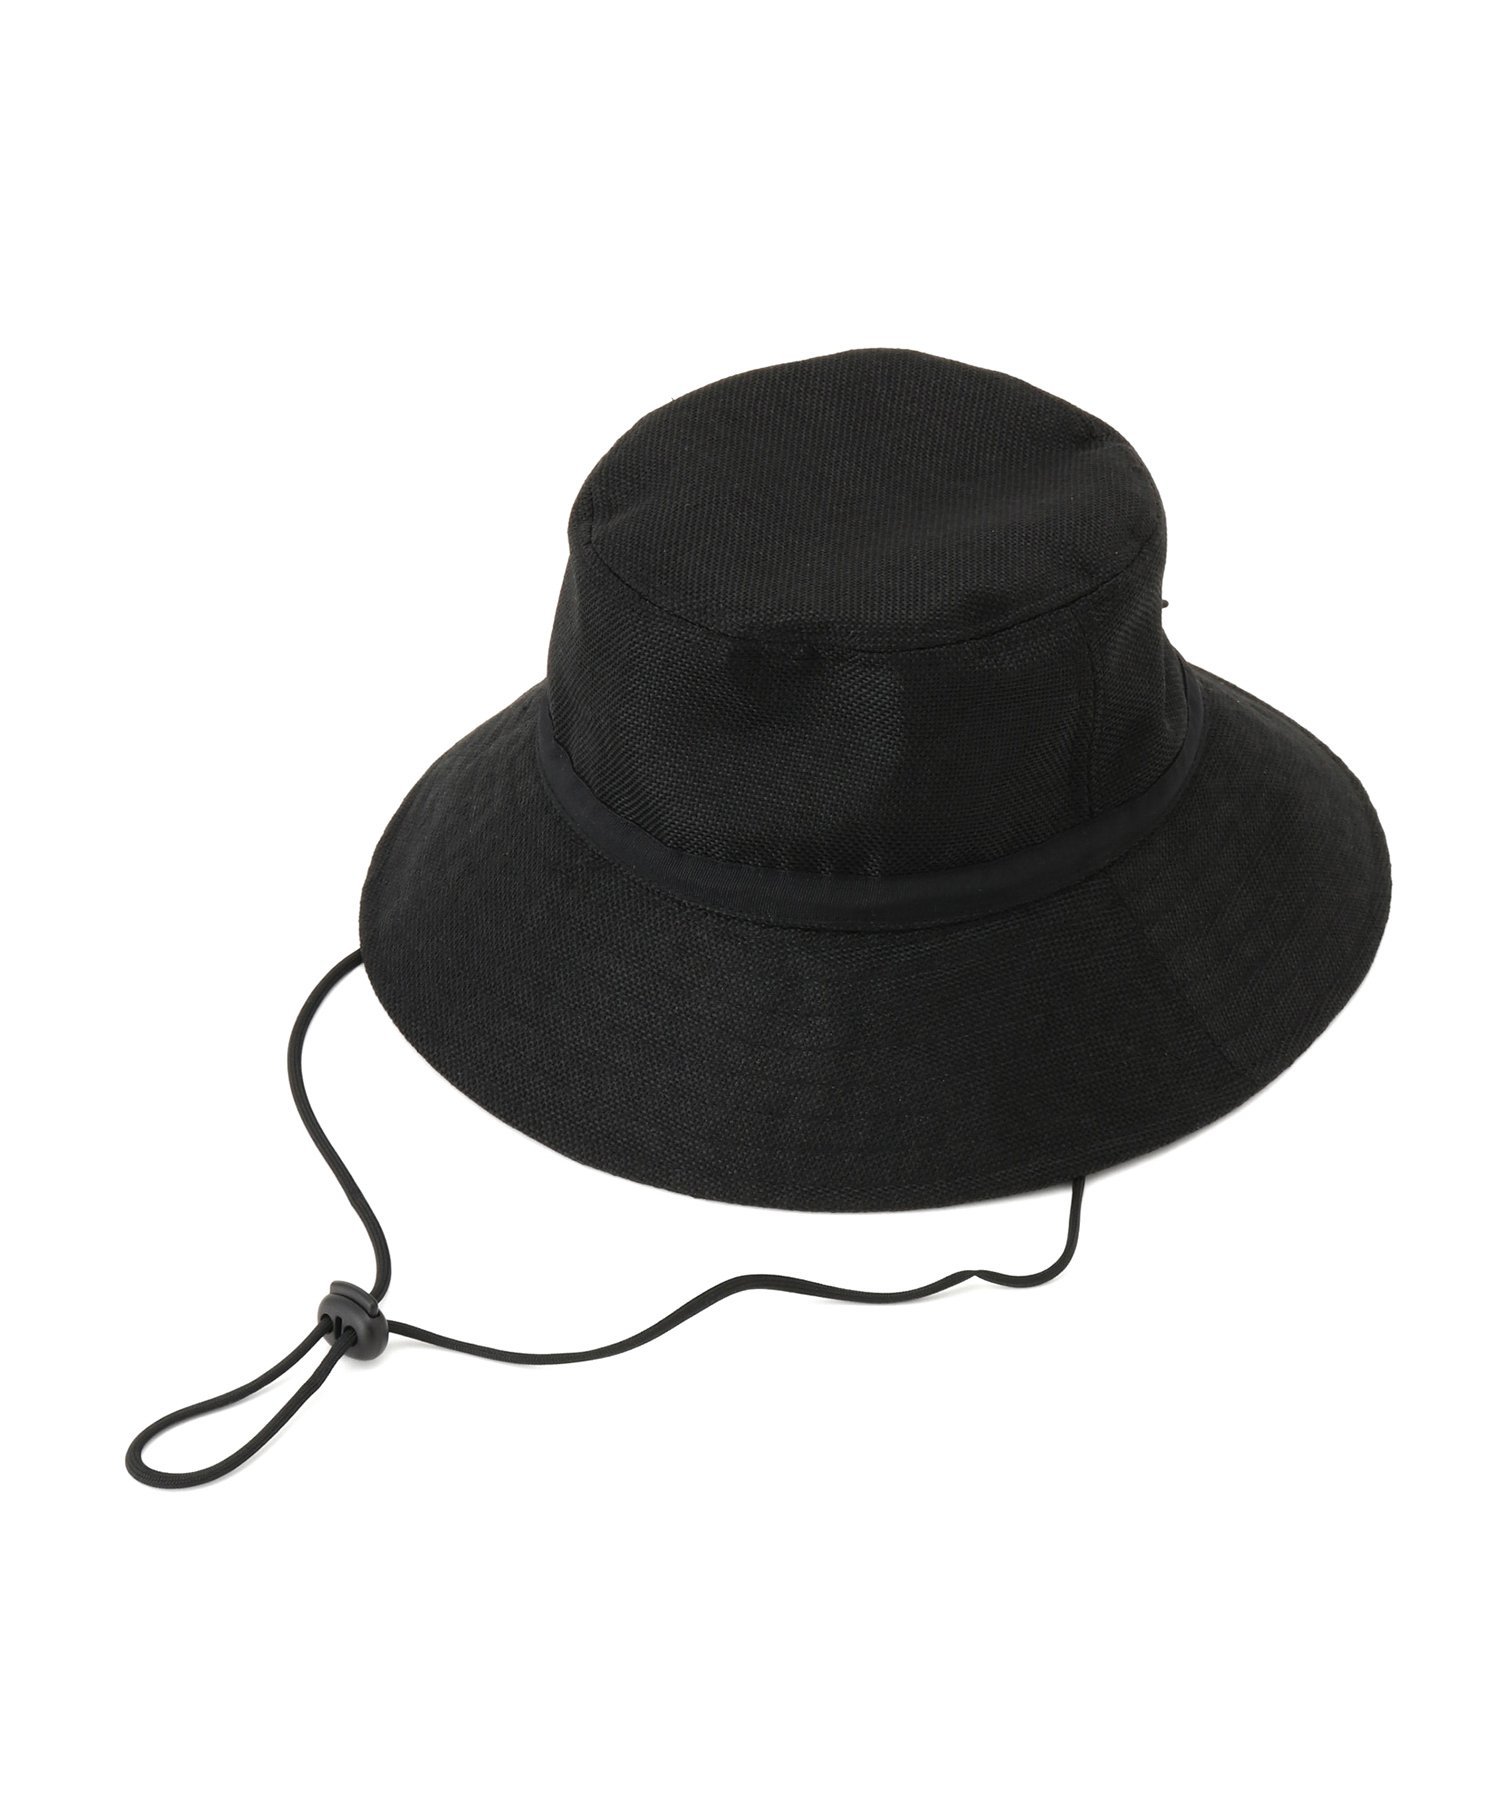 ロペピクニック 帽子 レディース ROPE' PICNIC PASSAGE UVカット/コカゲルナチュラルサファリハット ロペピクニック 帽子 ハット ブラック ベージュ【送料無料】